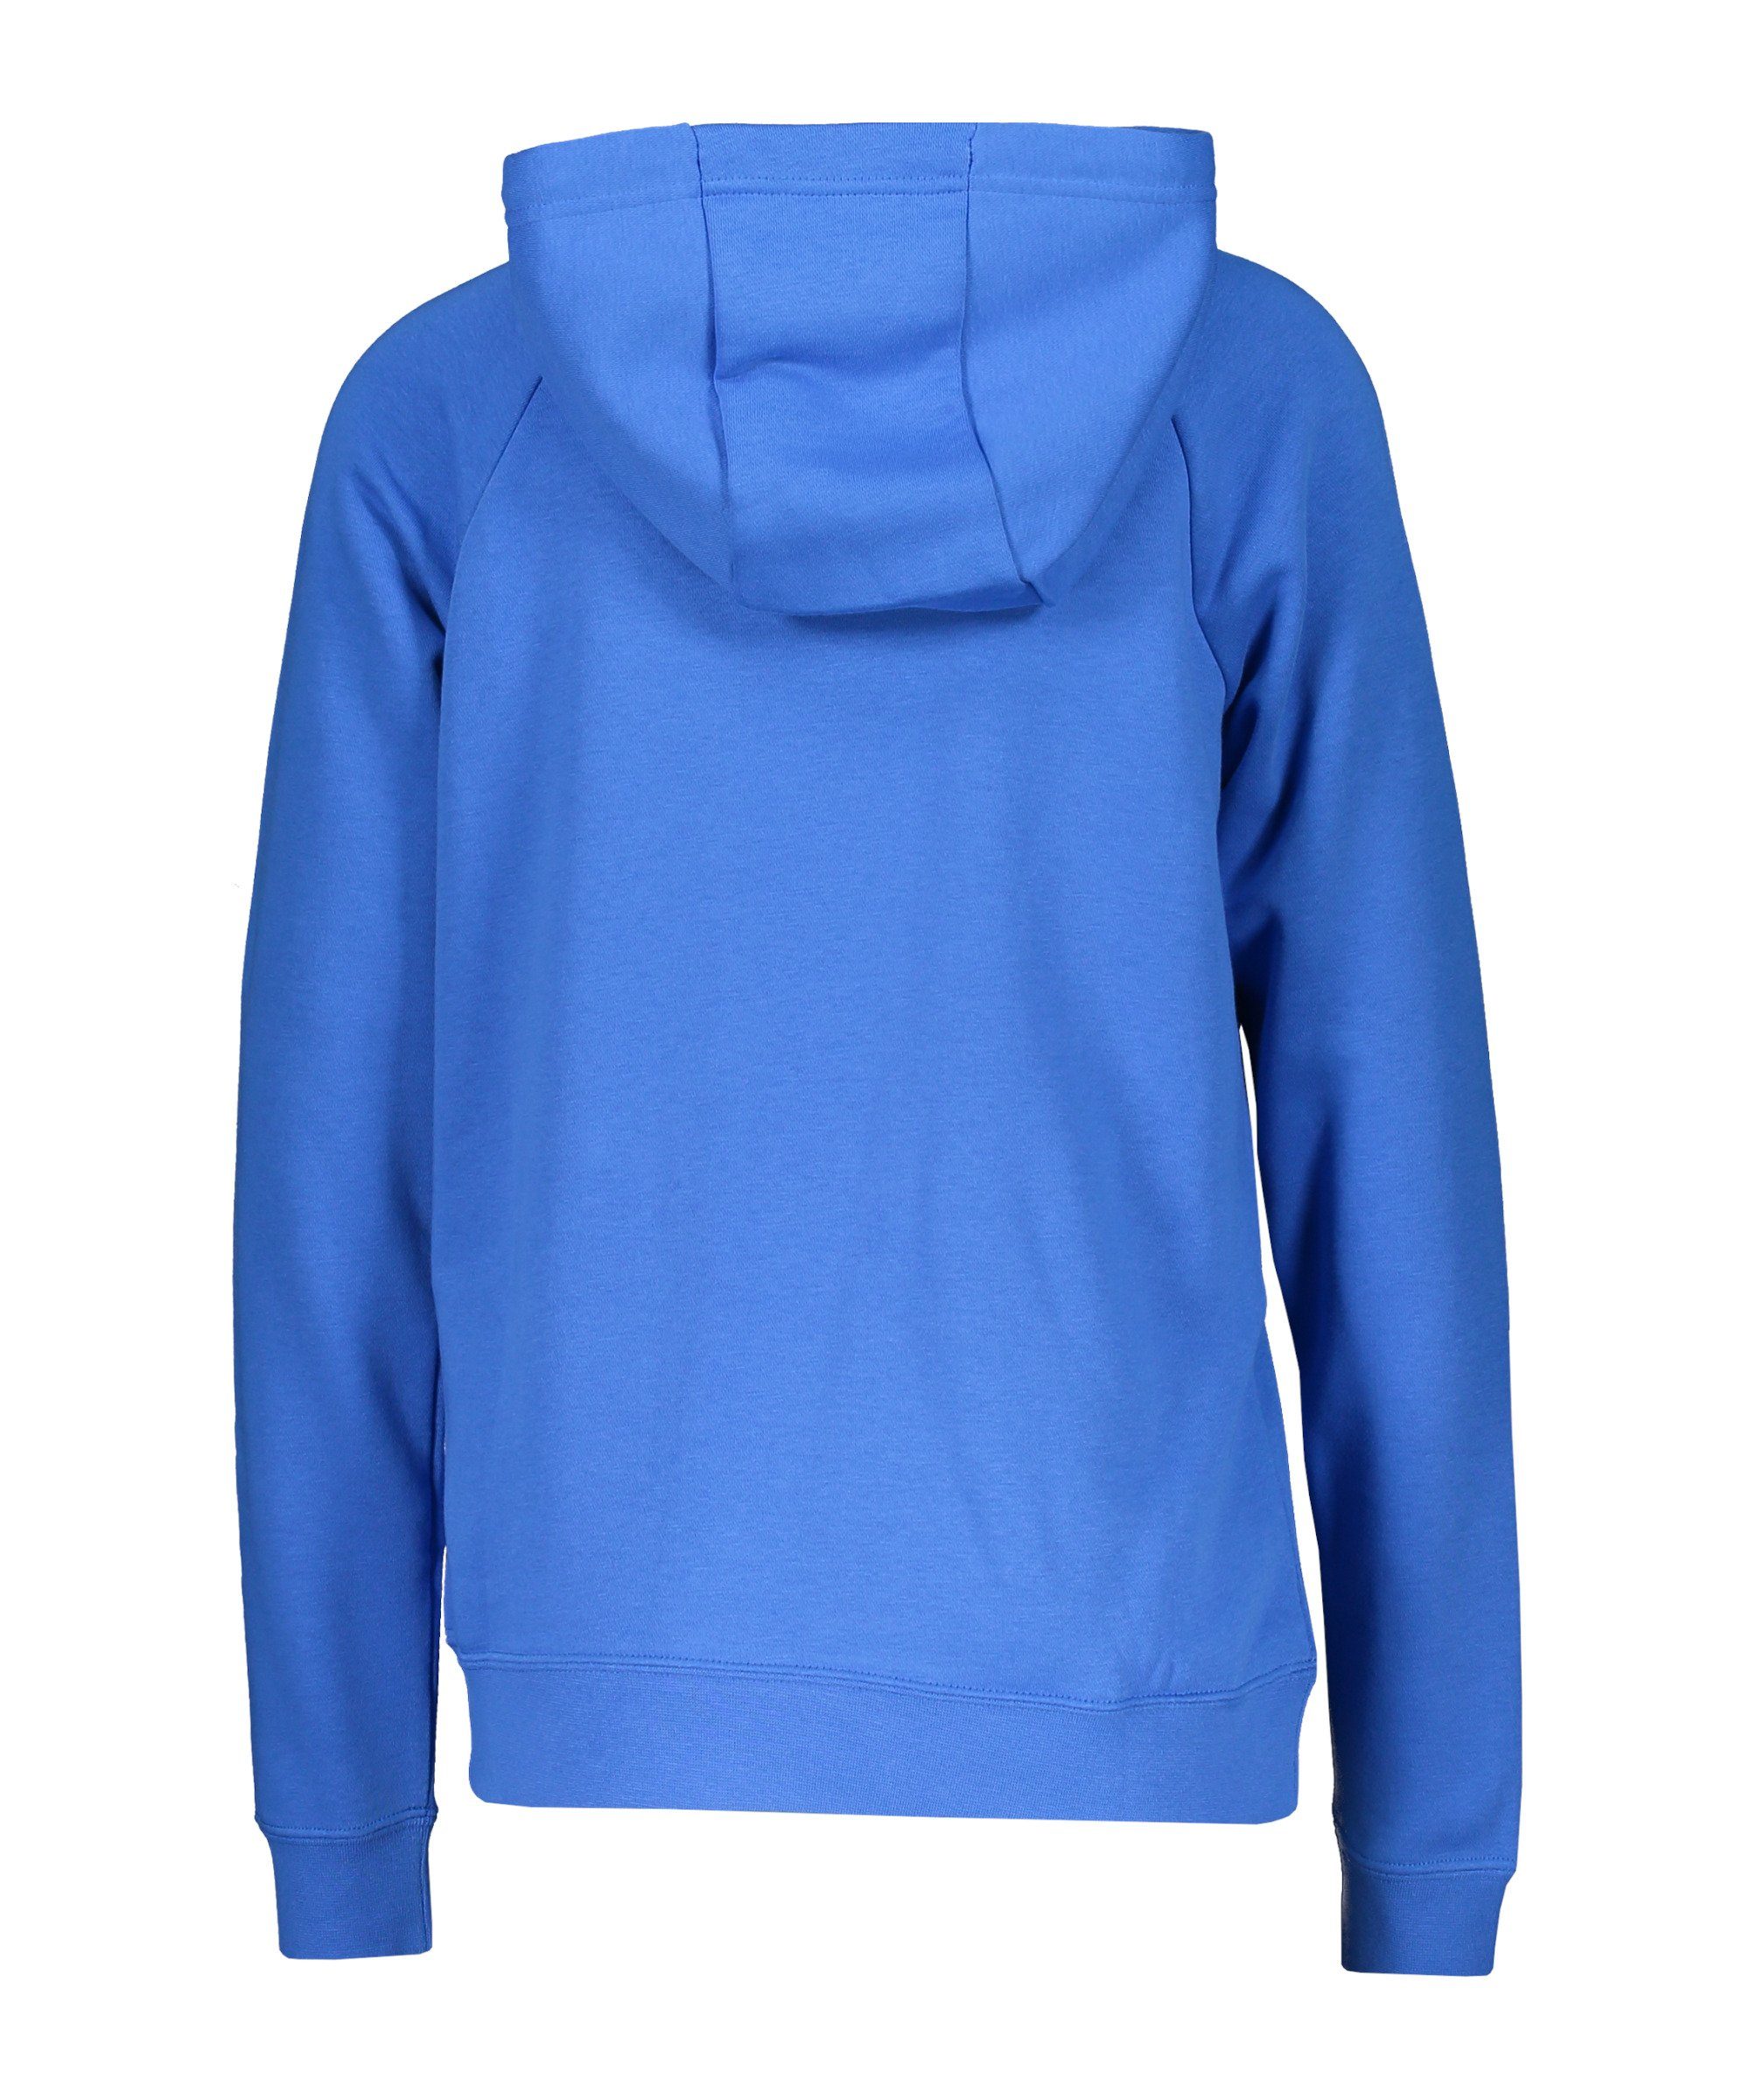 Sweater 20 blau Damen Hoody Fleece Nike Park